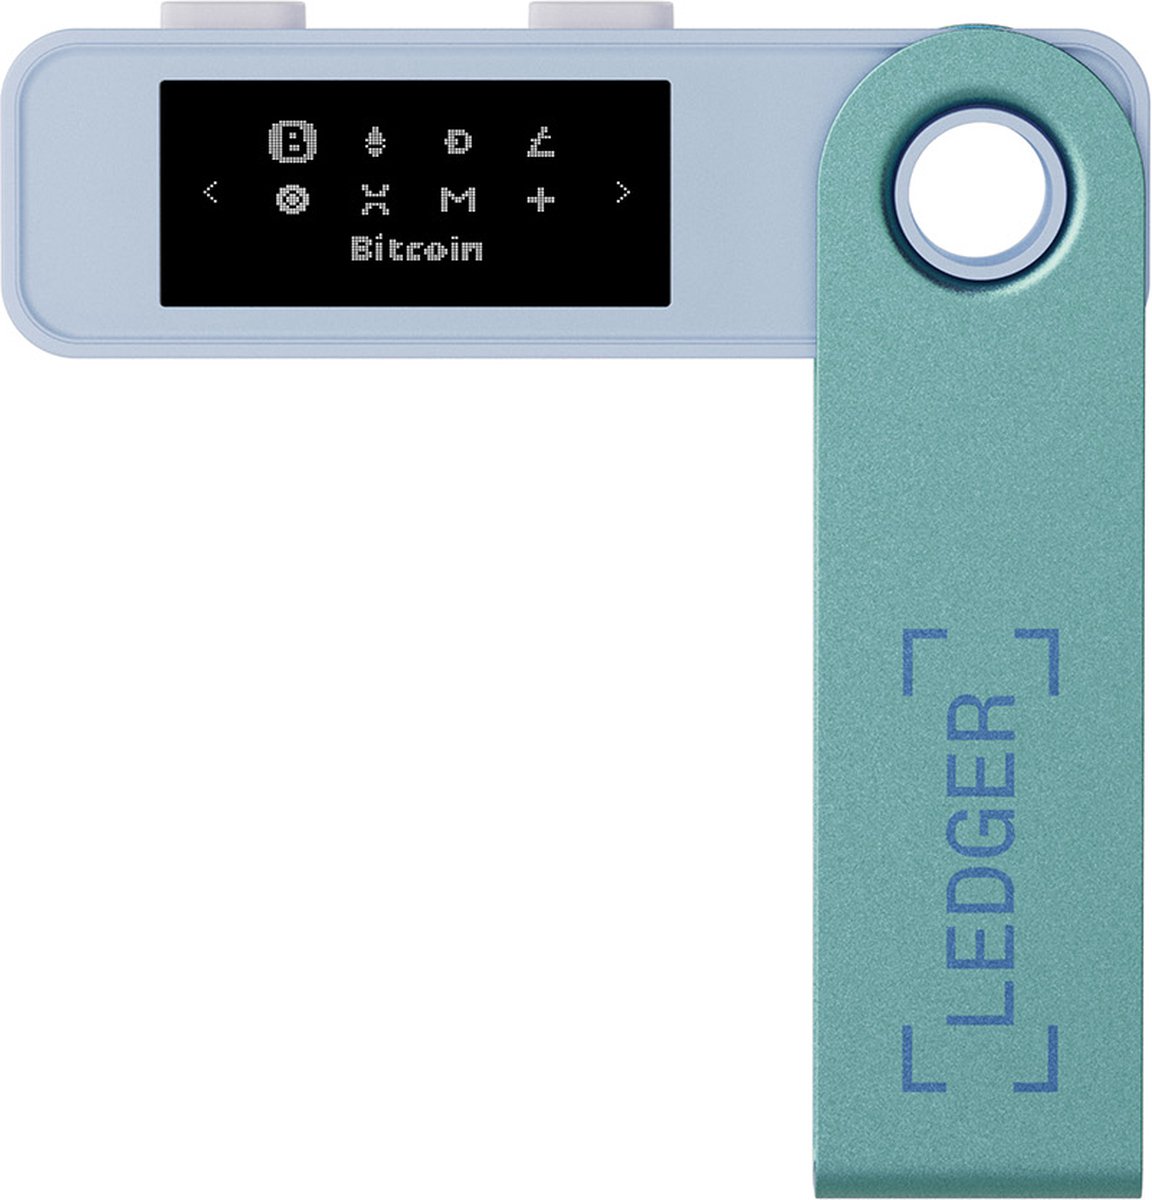 Ledger Nano S Plus - Hardware Wallet - het perfecte instapmodel voor het veilig beheren van al je crypto (Bitcoin) en NFT's - Pastel Green